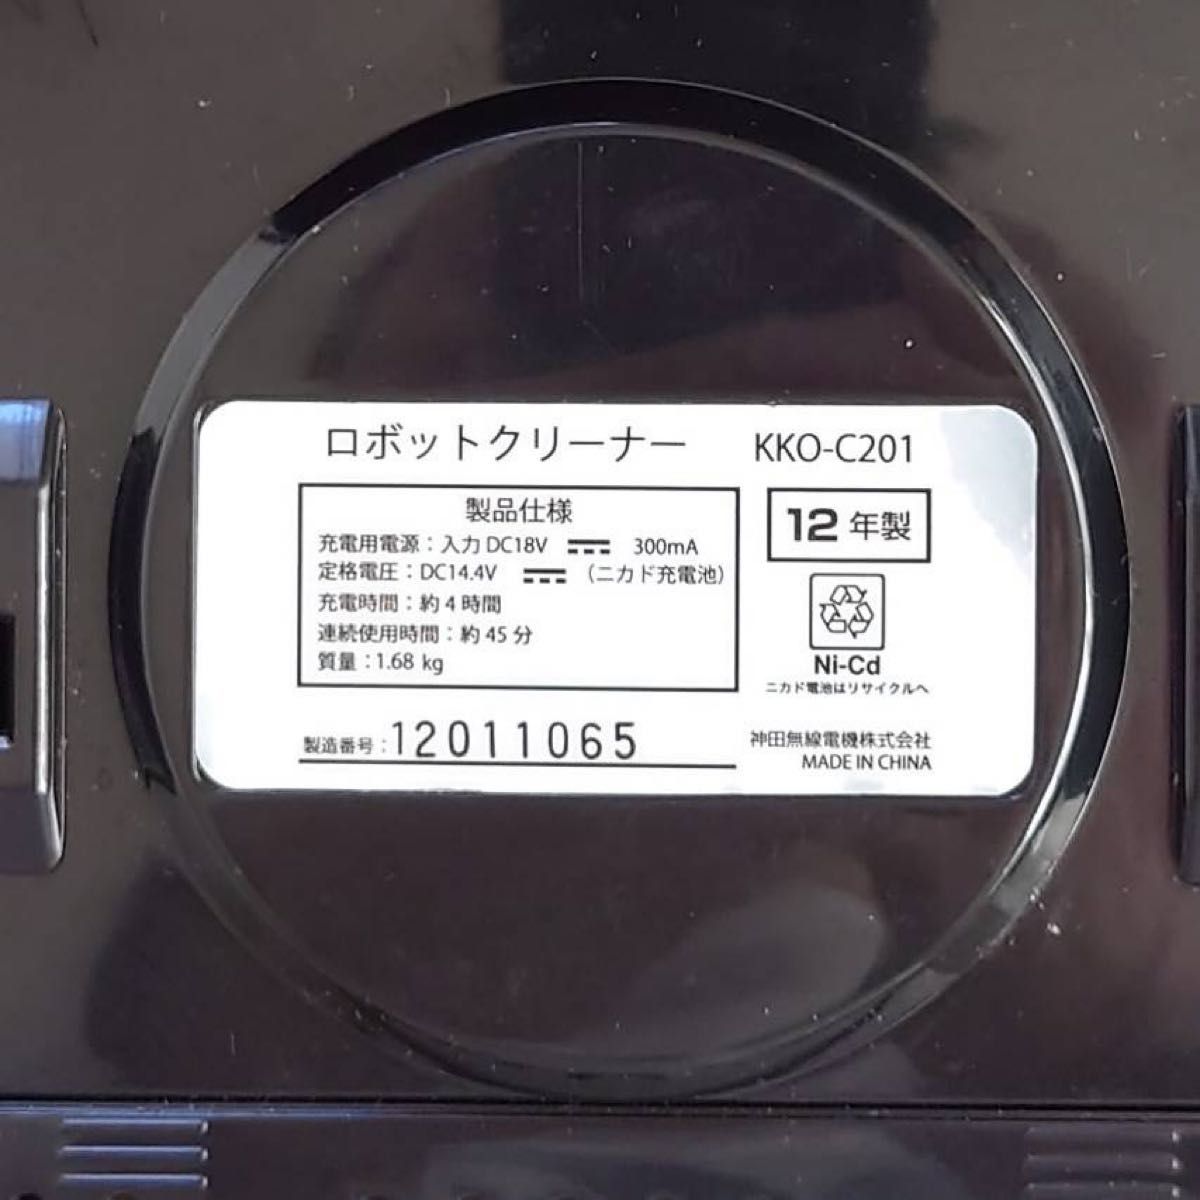 値下げ!【新品】ロボット掃除機 apro アプロKKO-C201-WH